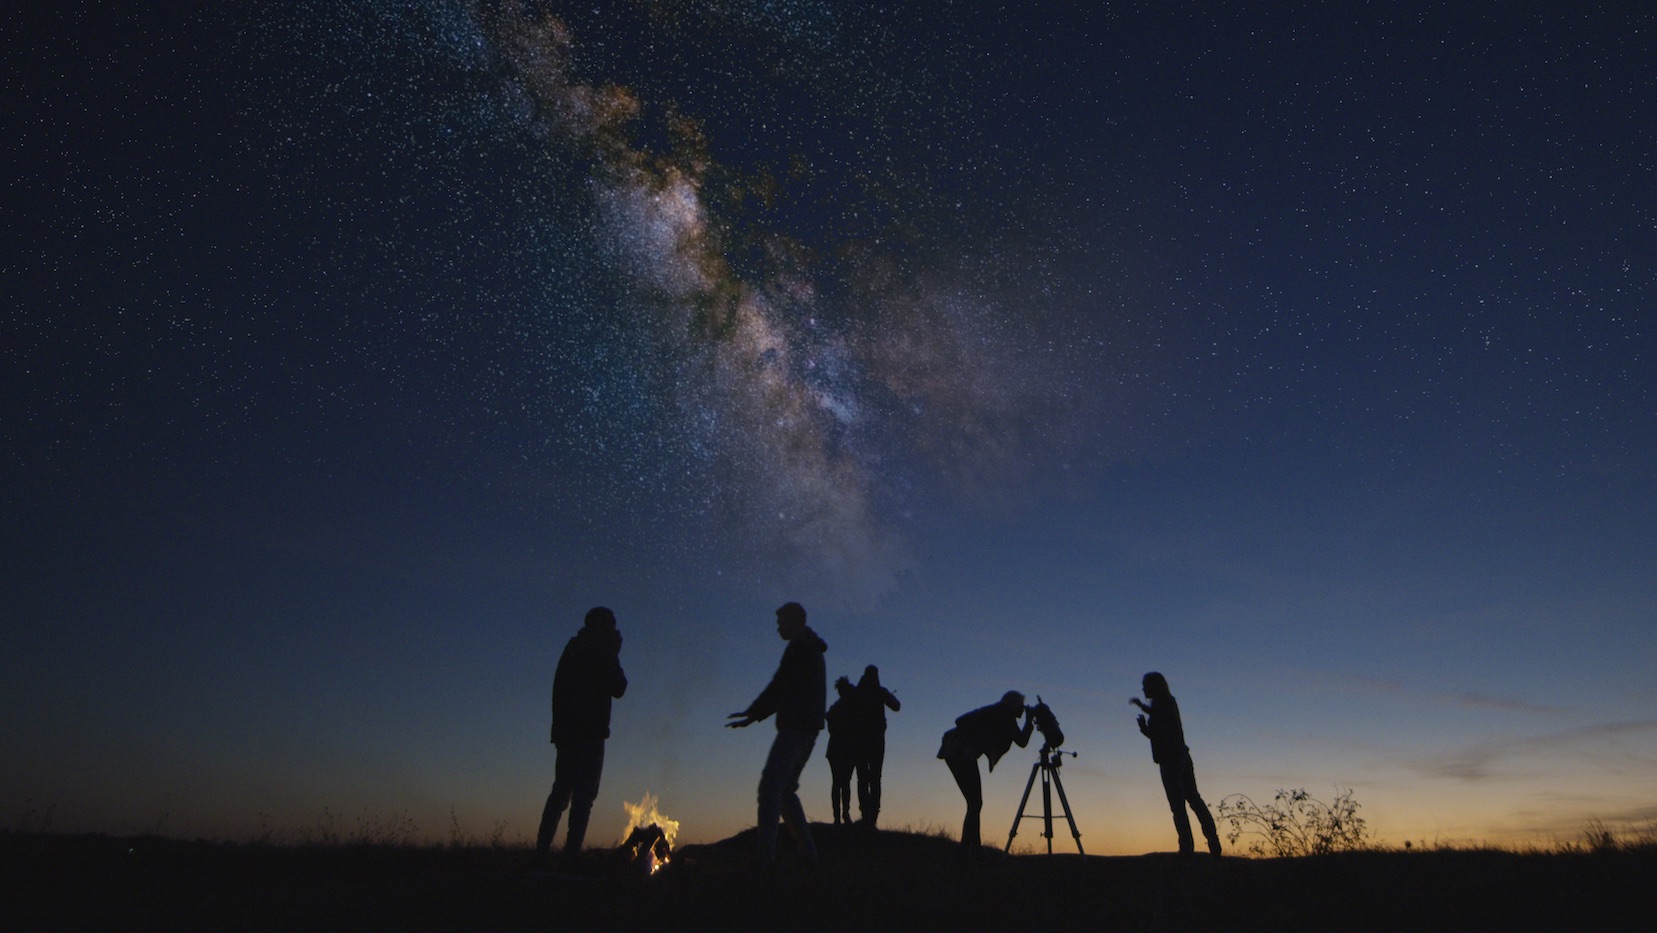 Die Wunder des Nachthimmels mit Freunden und Familie teilen. Frame Stock Footage/Shutterstock.com